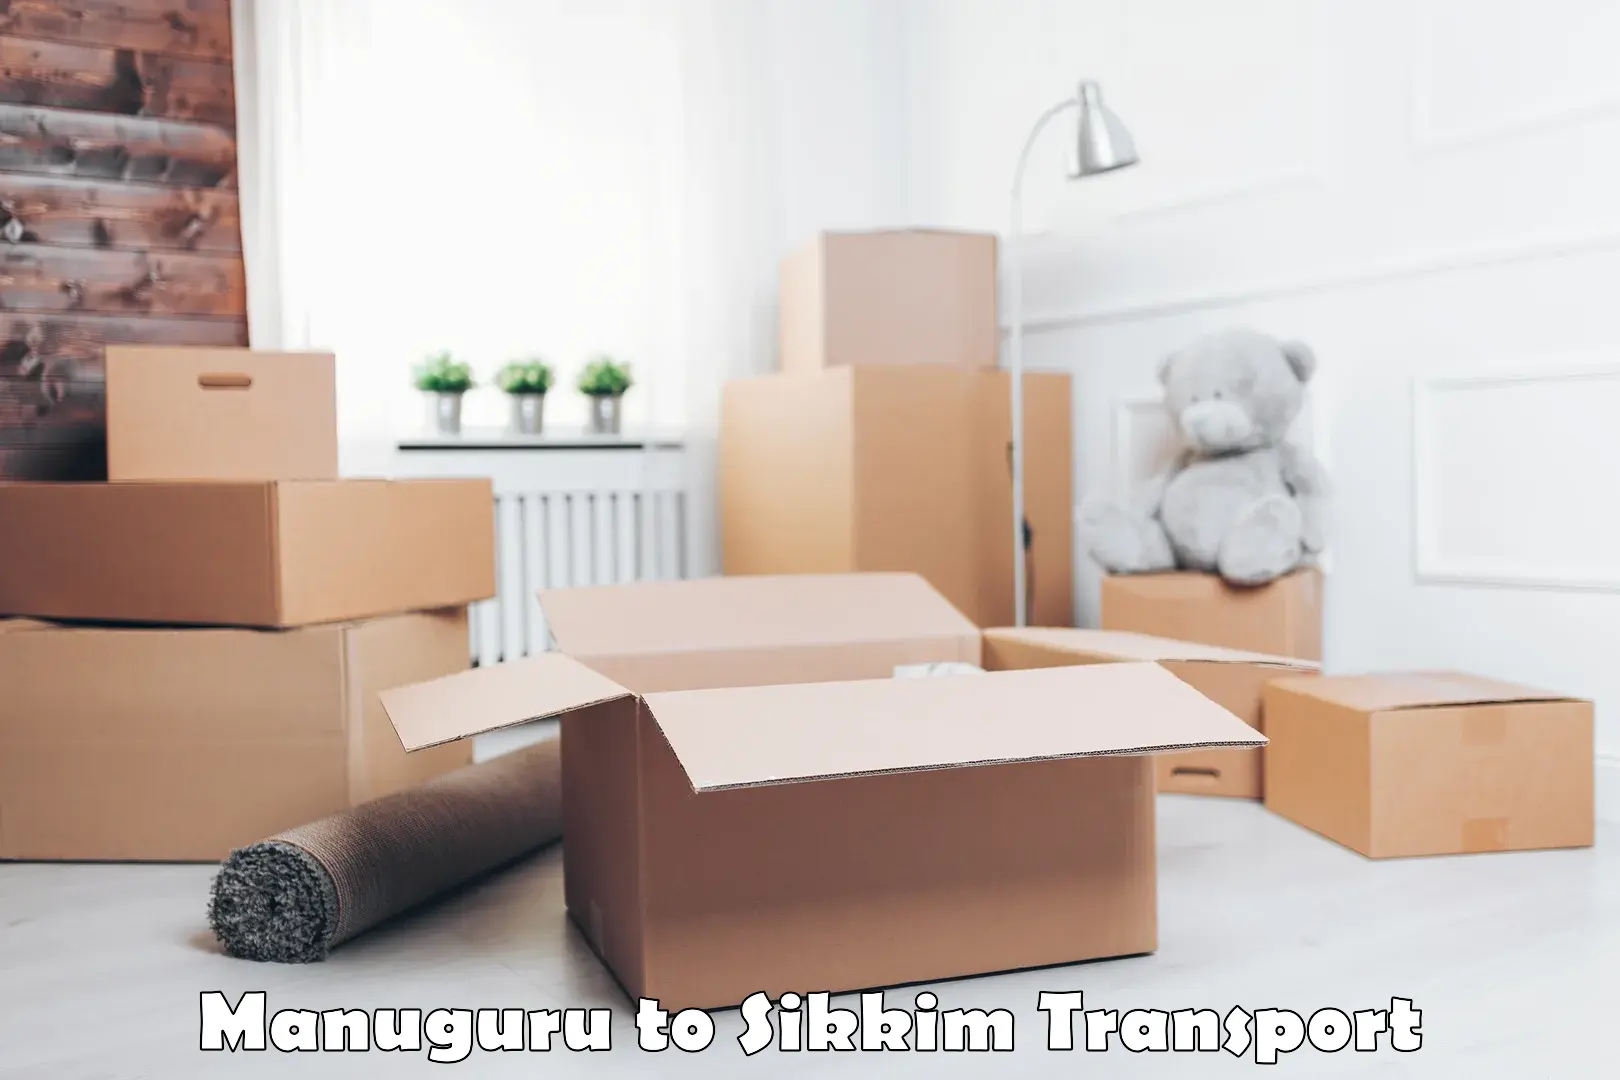 Lorry transport service Manuguru to Mangan